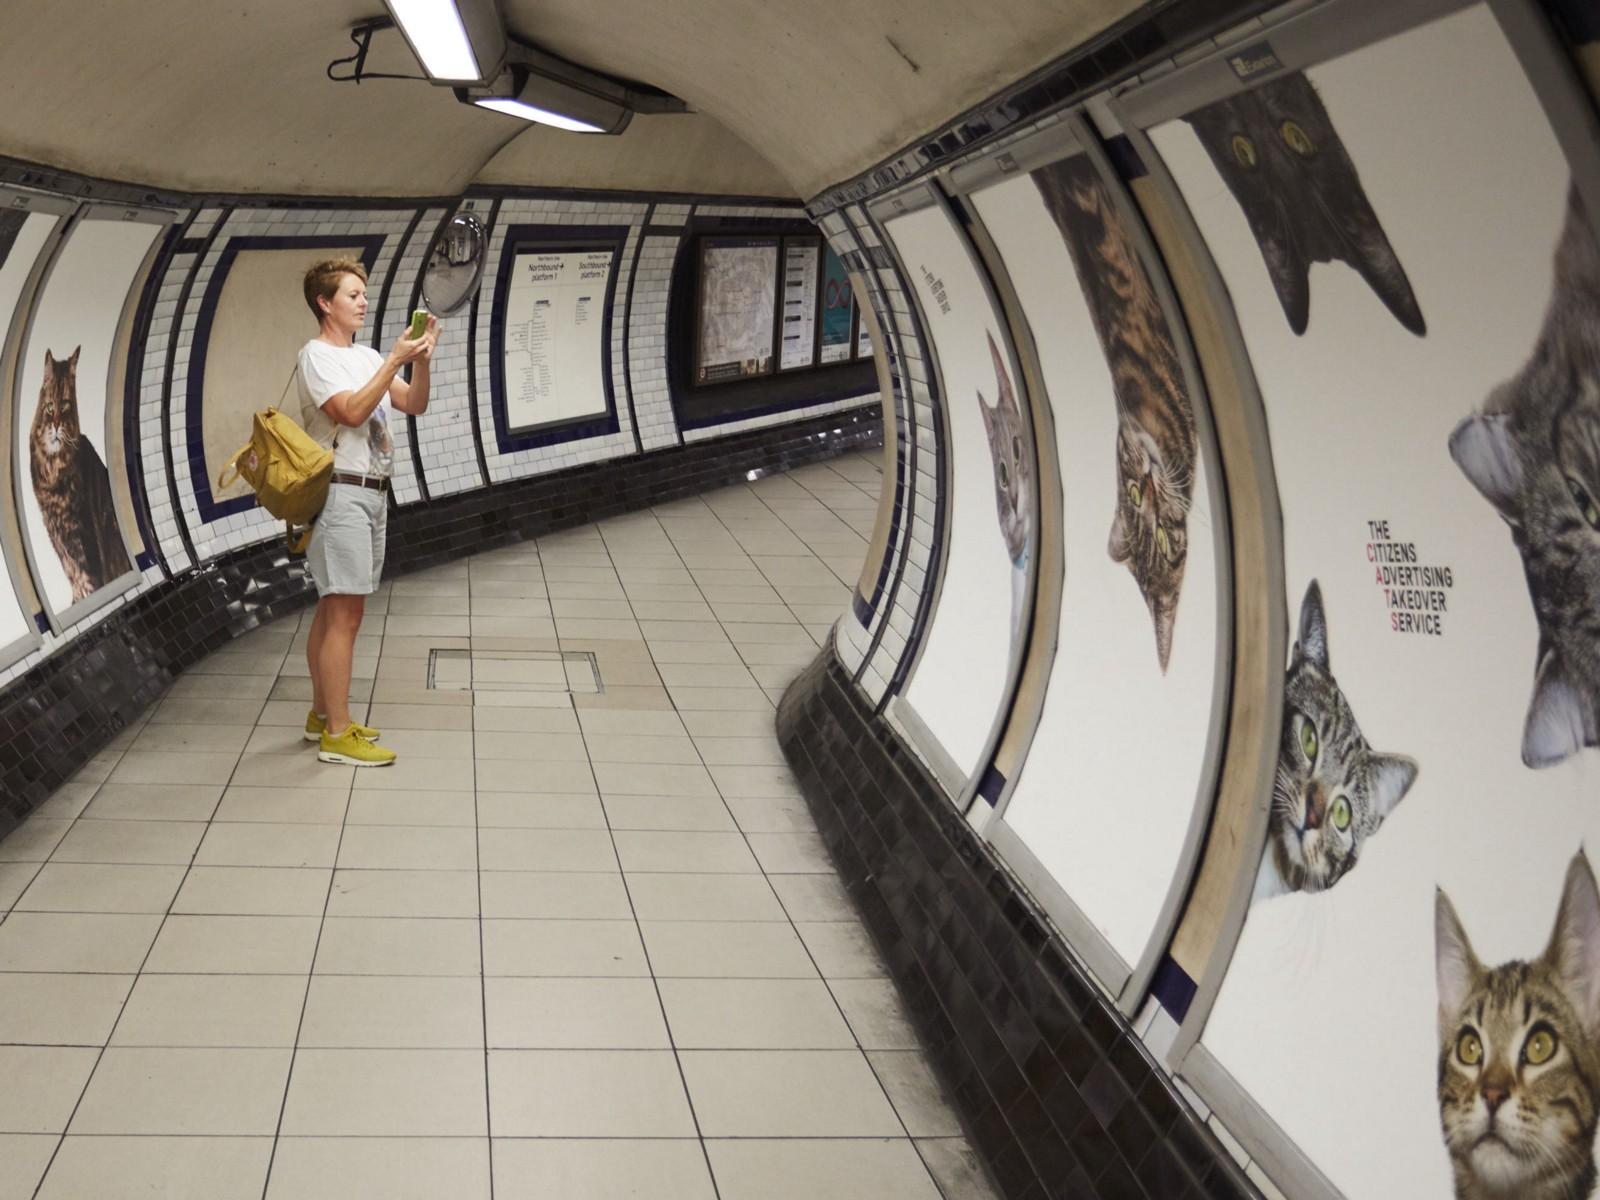 Tunnelbanestationen är nu fylld av 68 kattbilder istället för reklam.